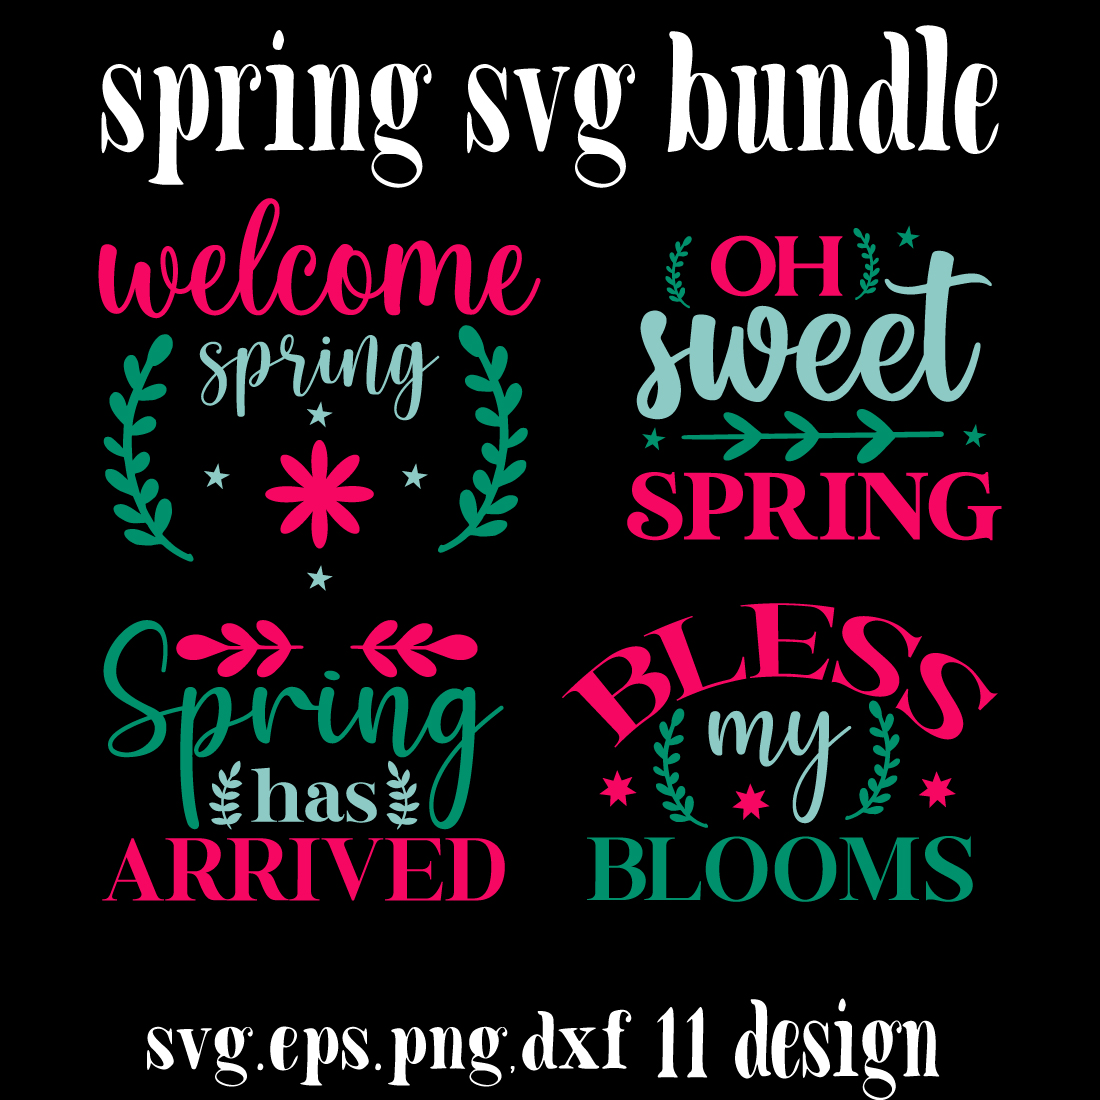 spring svg bundle cover image.